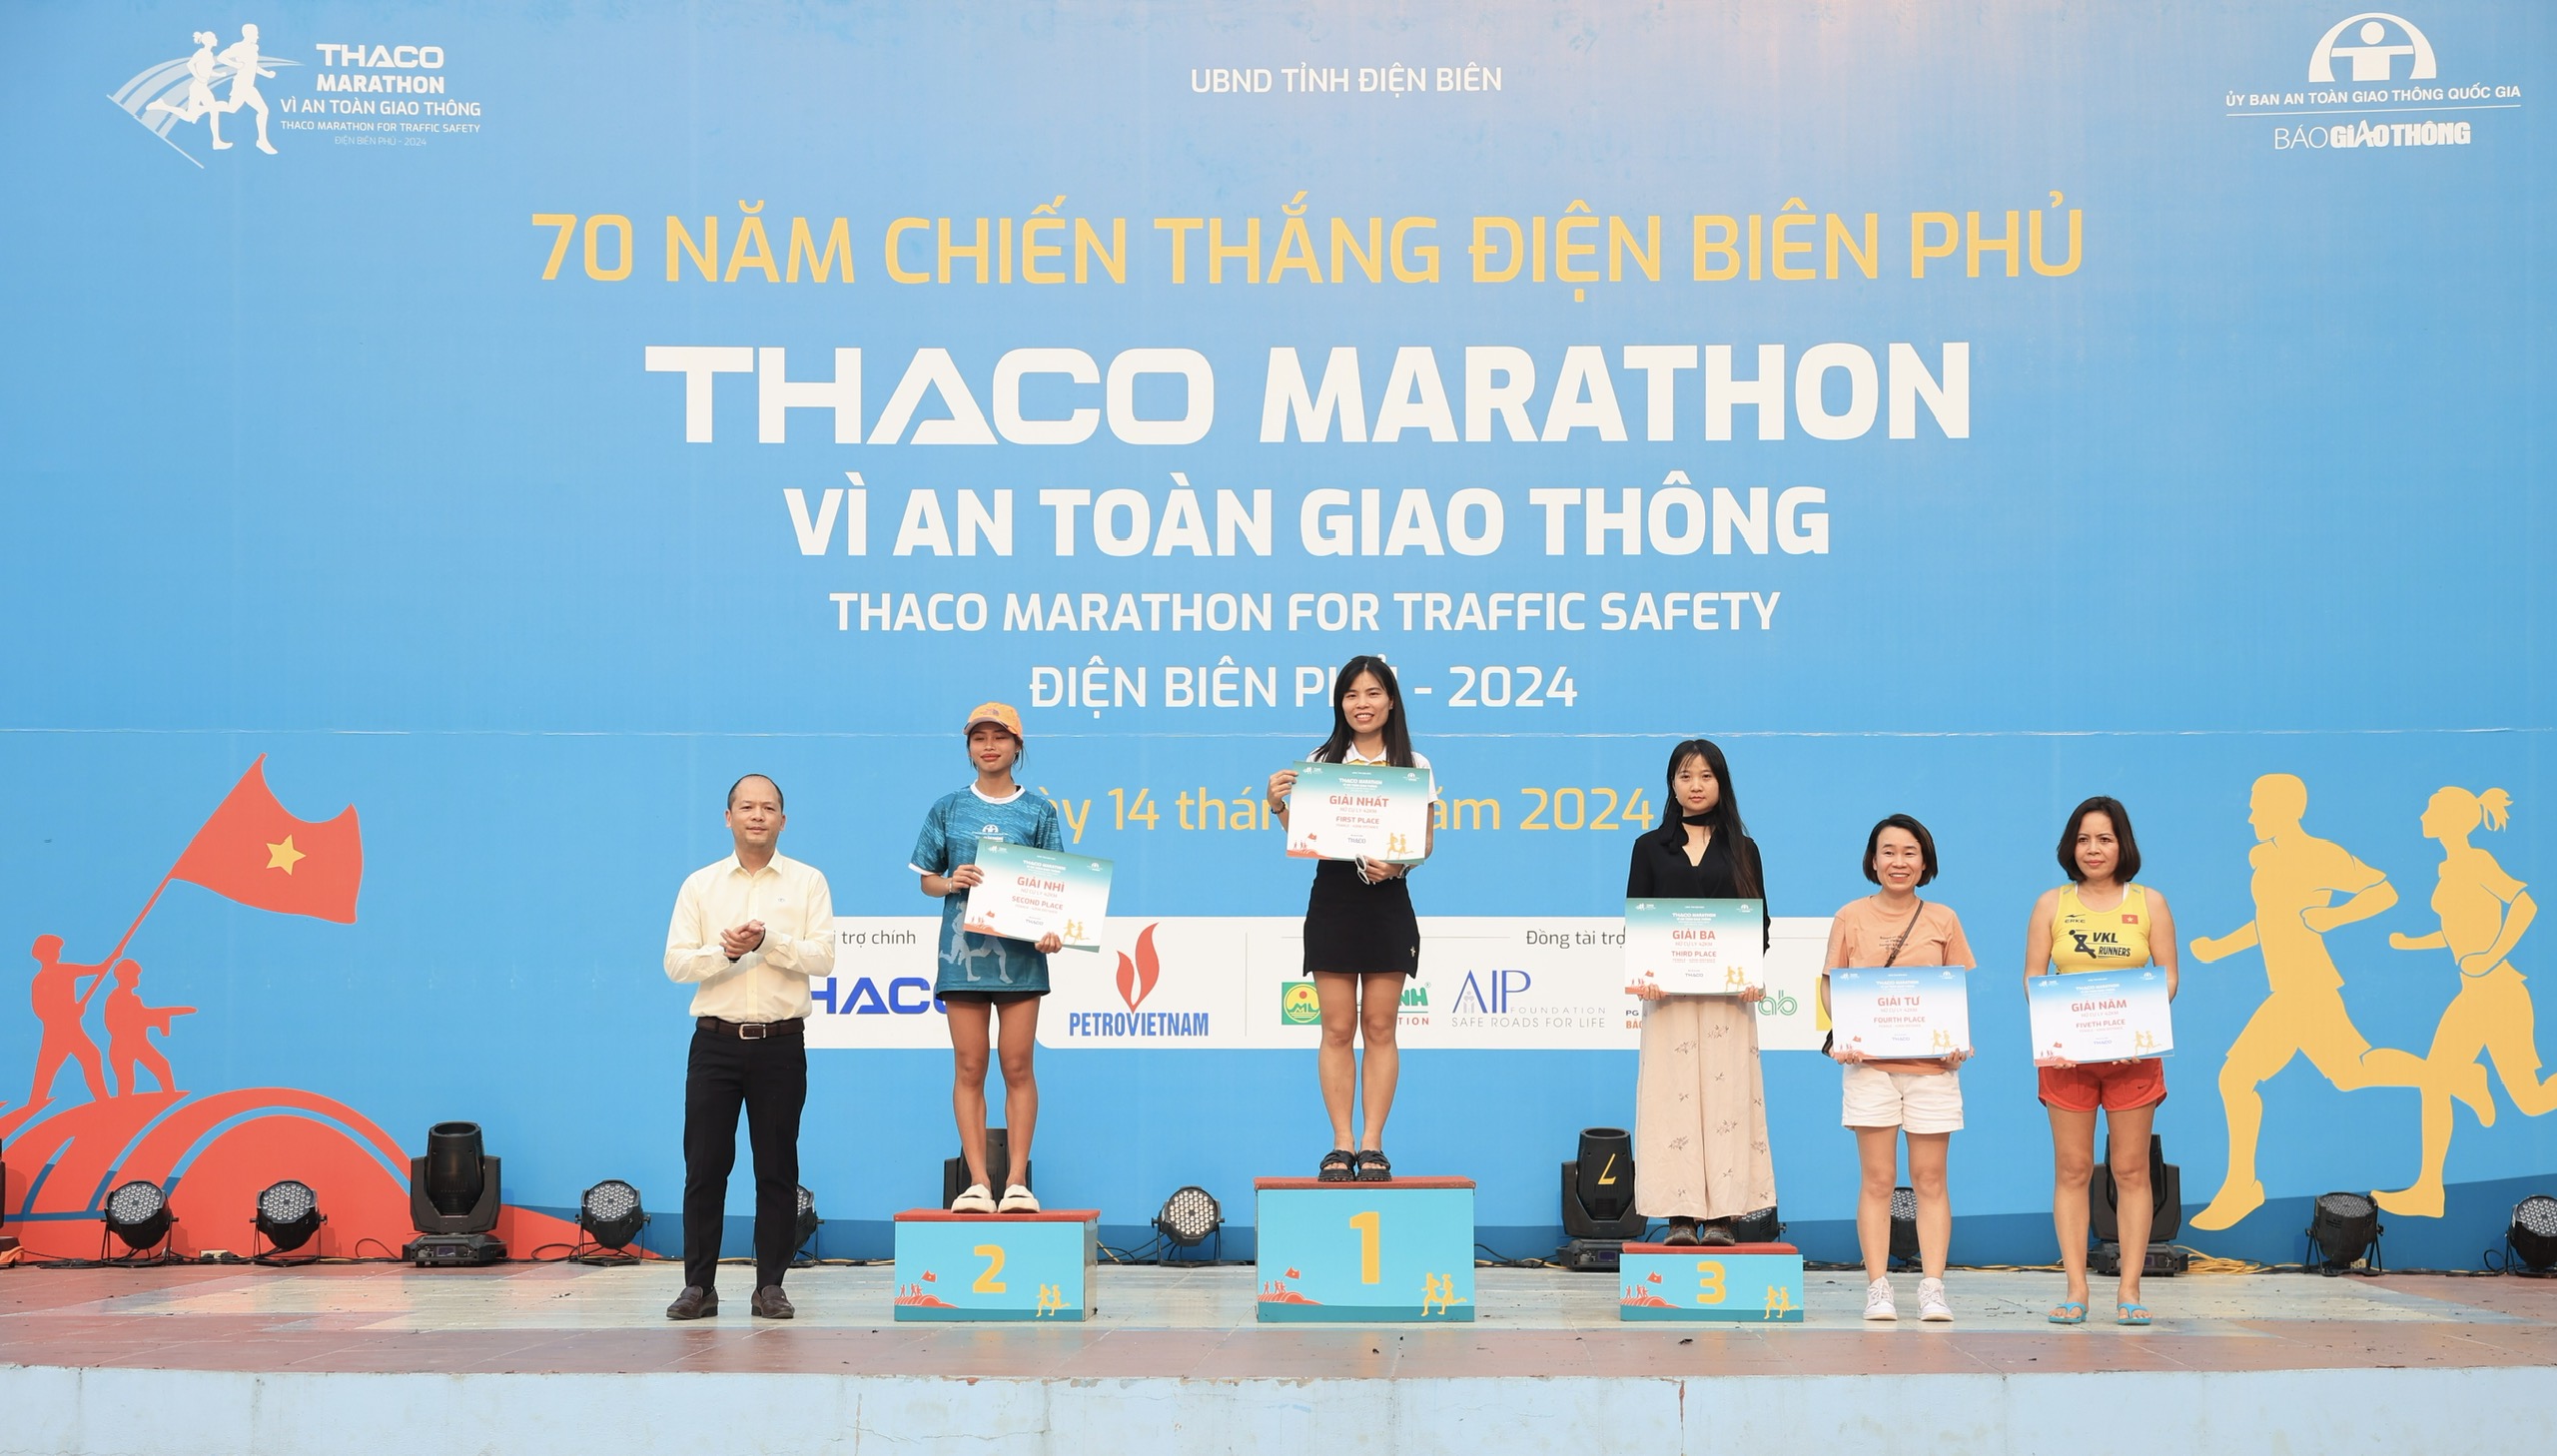 Trực tiếp: Giải THACO Marathon vì ATGT - Điện Biên Phủ 2024 thành công rực rỡ- Ảnh 6.